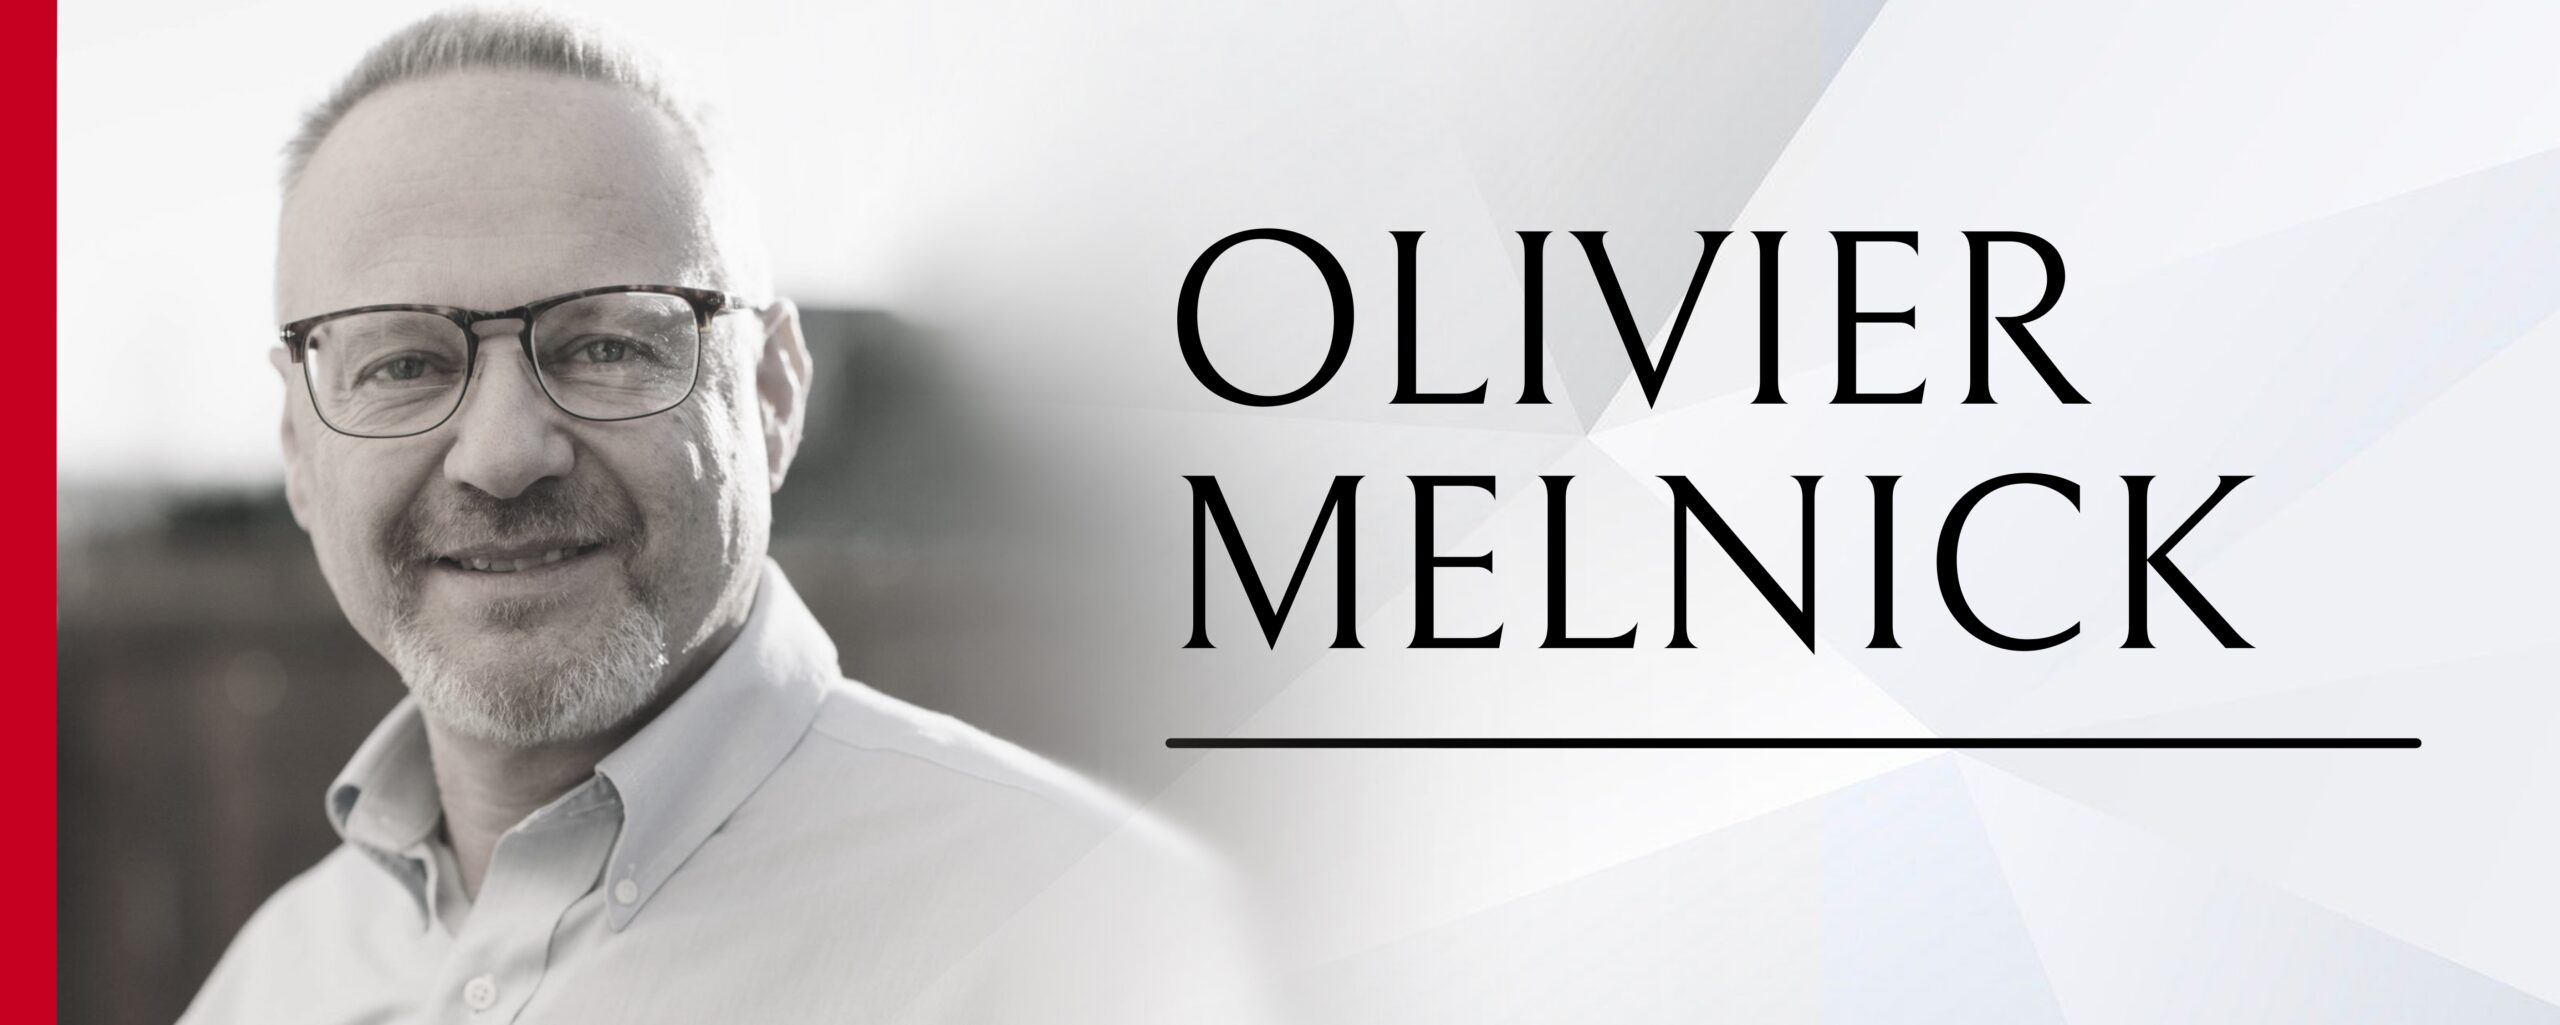 Olivier Melnick